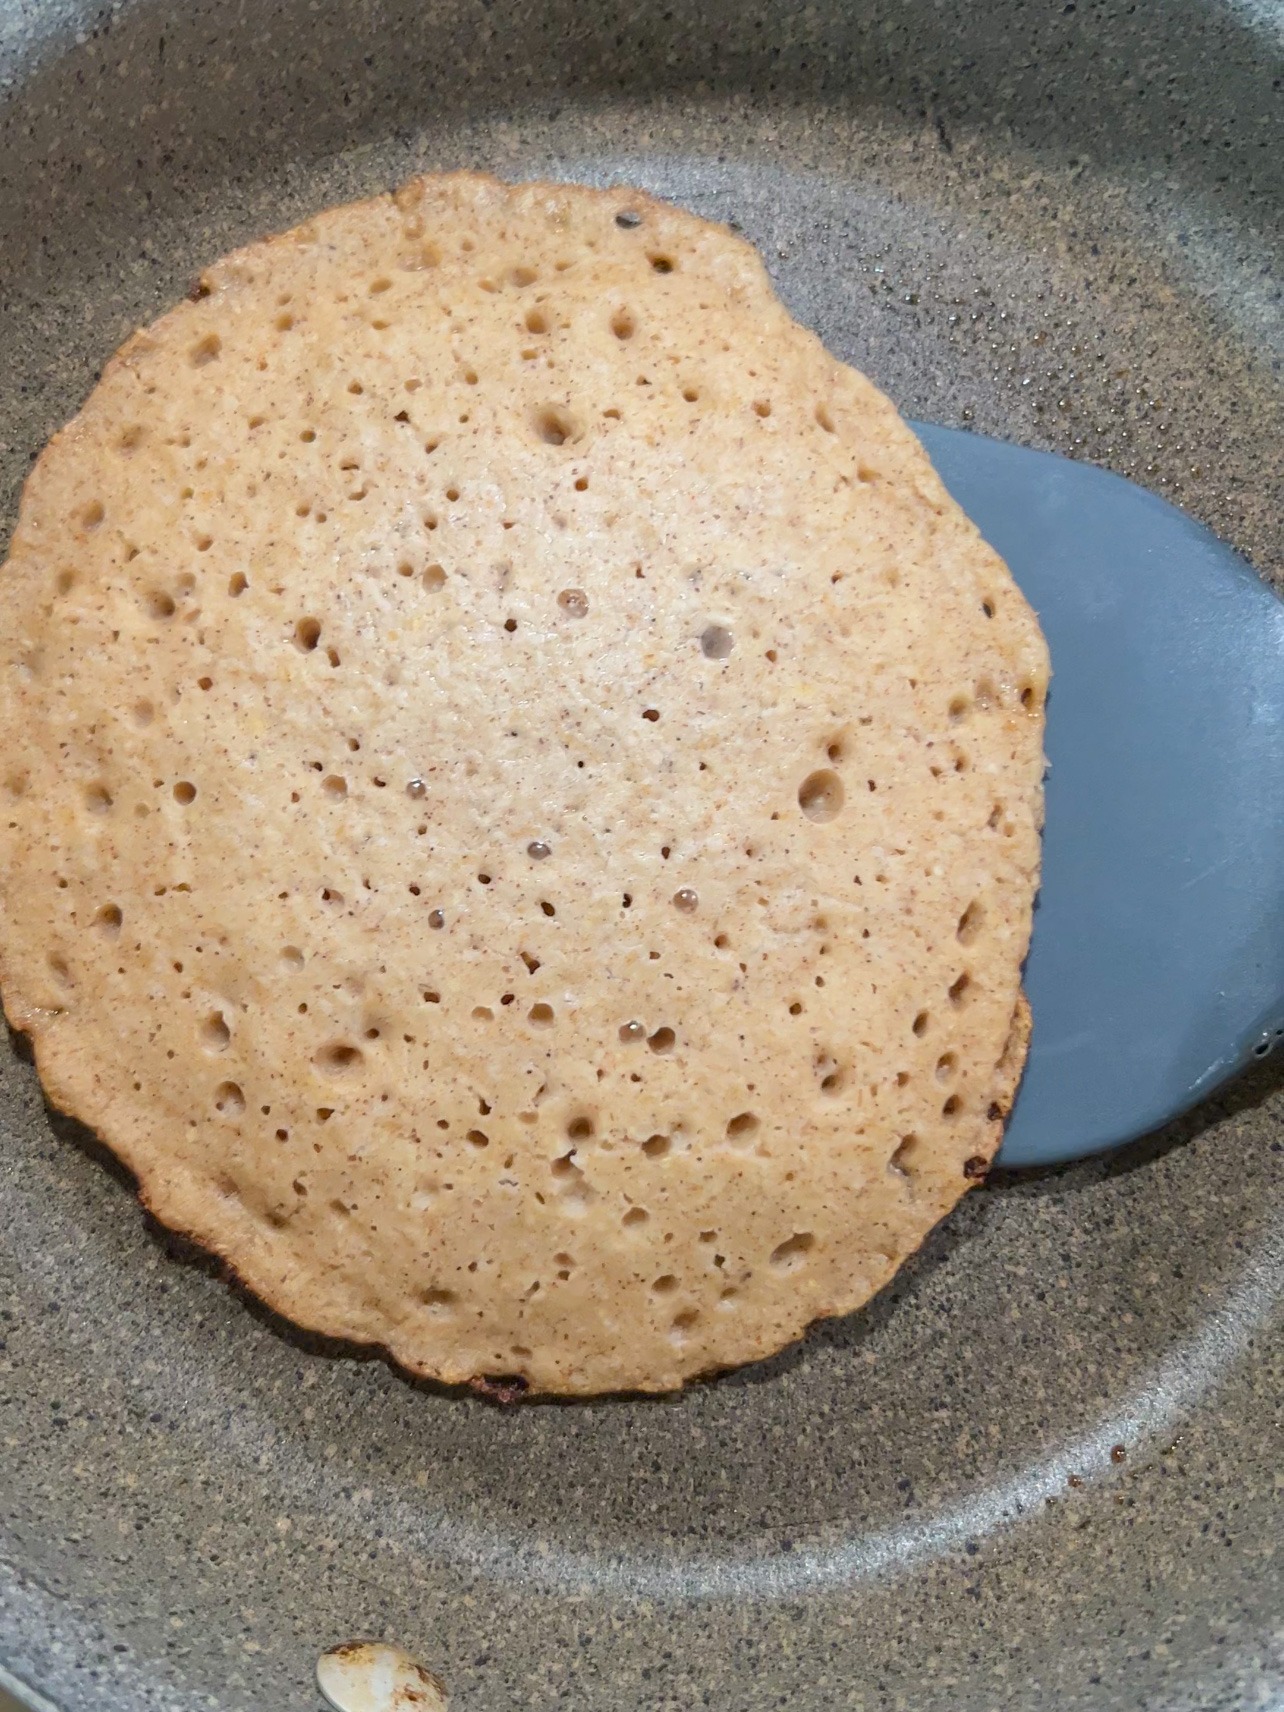 frying pancake until bubbles form